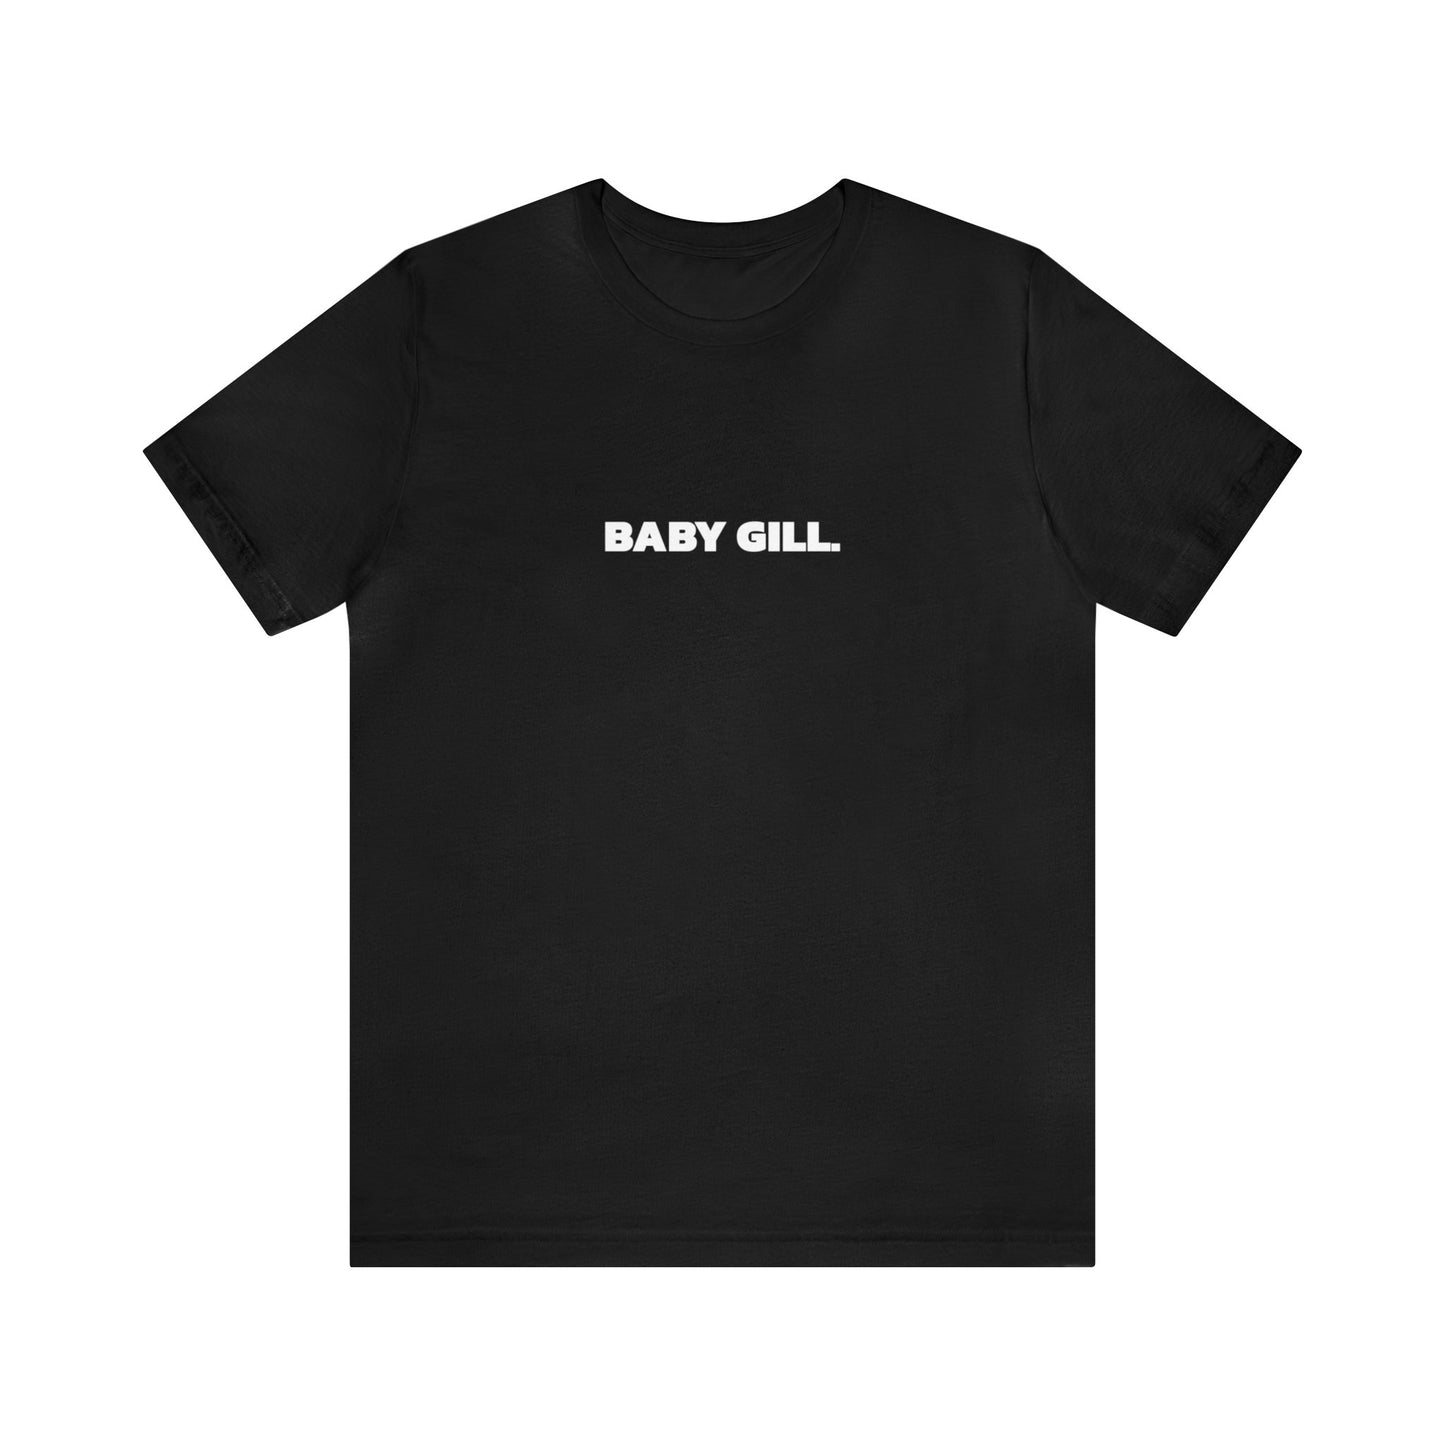 Baby Gill - Short Sleeve Tee